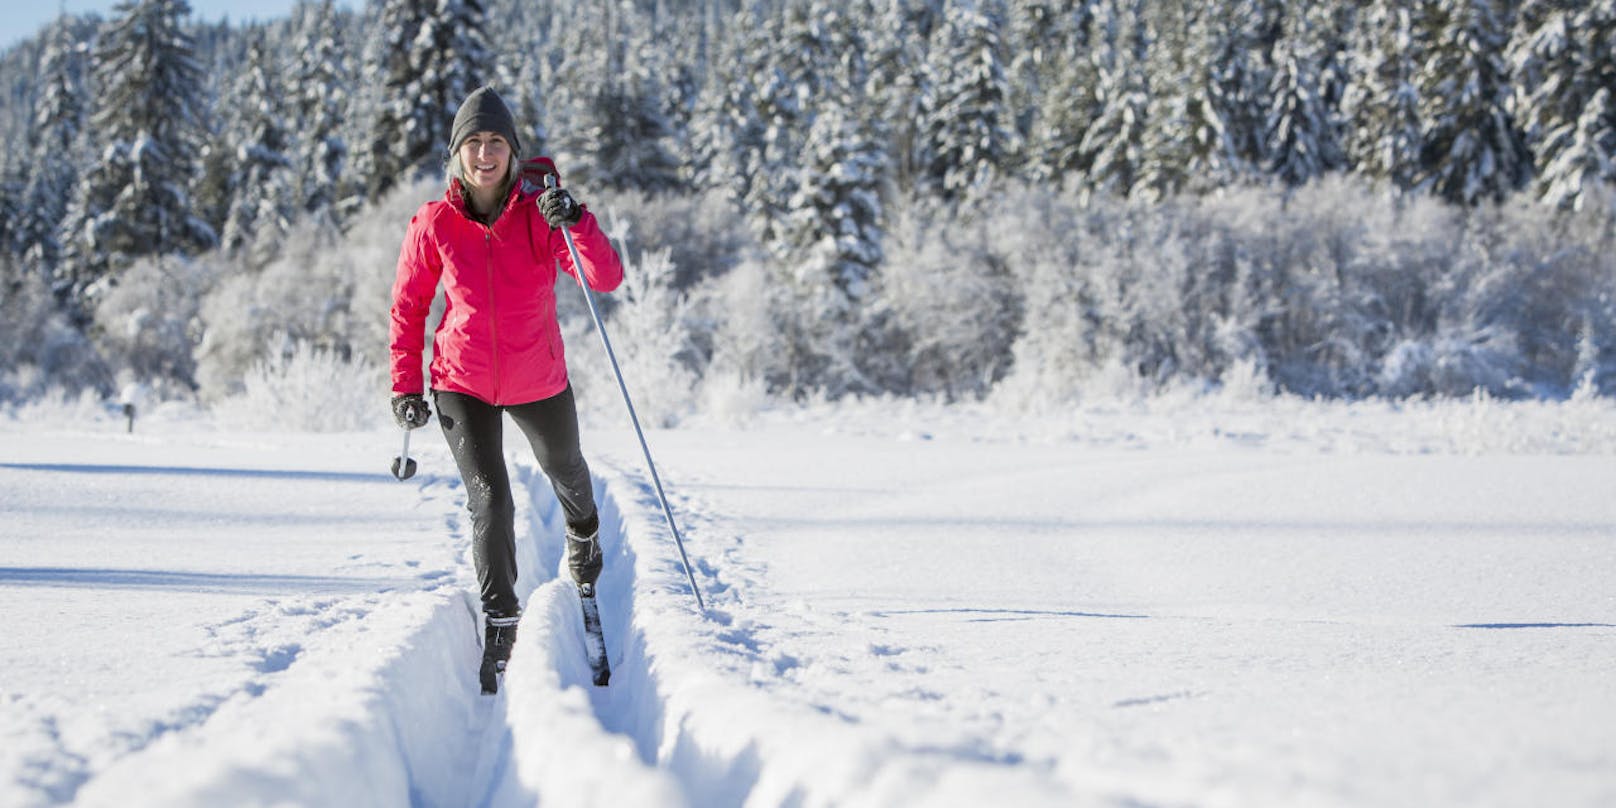 Beim Langlaufen werden etwa 90 bis 95 Prozent der Muskeln aktiviert. Das optimale Wintertraining für Läufer und andere Ausdauersportler - und auch für eine gute Figur. Fürs Langlaufen braucht es viel Power im Rumpf und circa 500 bis 600 Kilokalorien pro Stunde werden verbrannt.